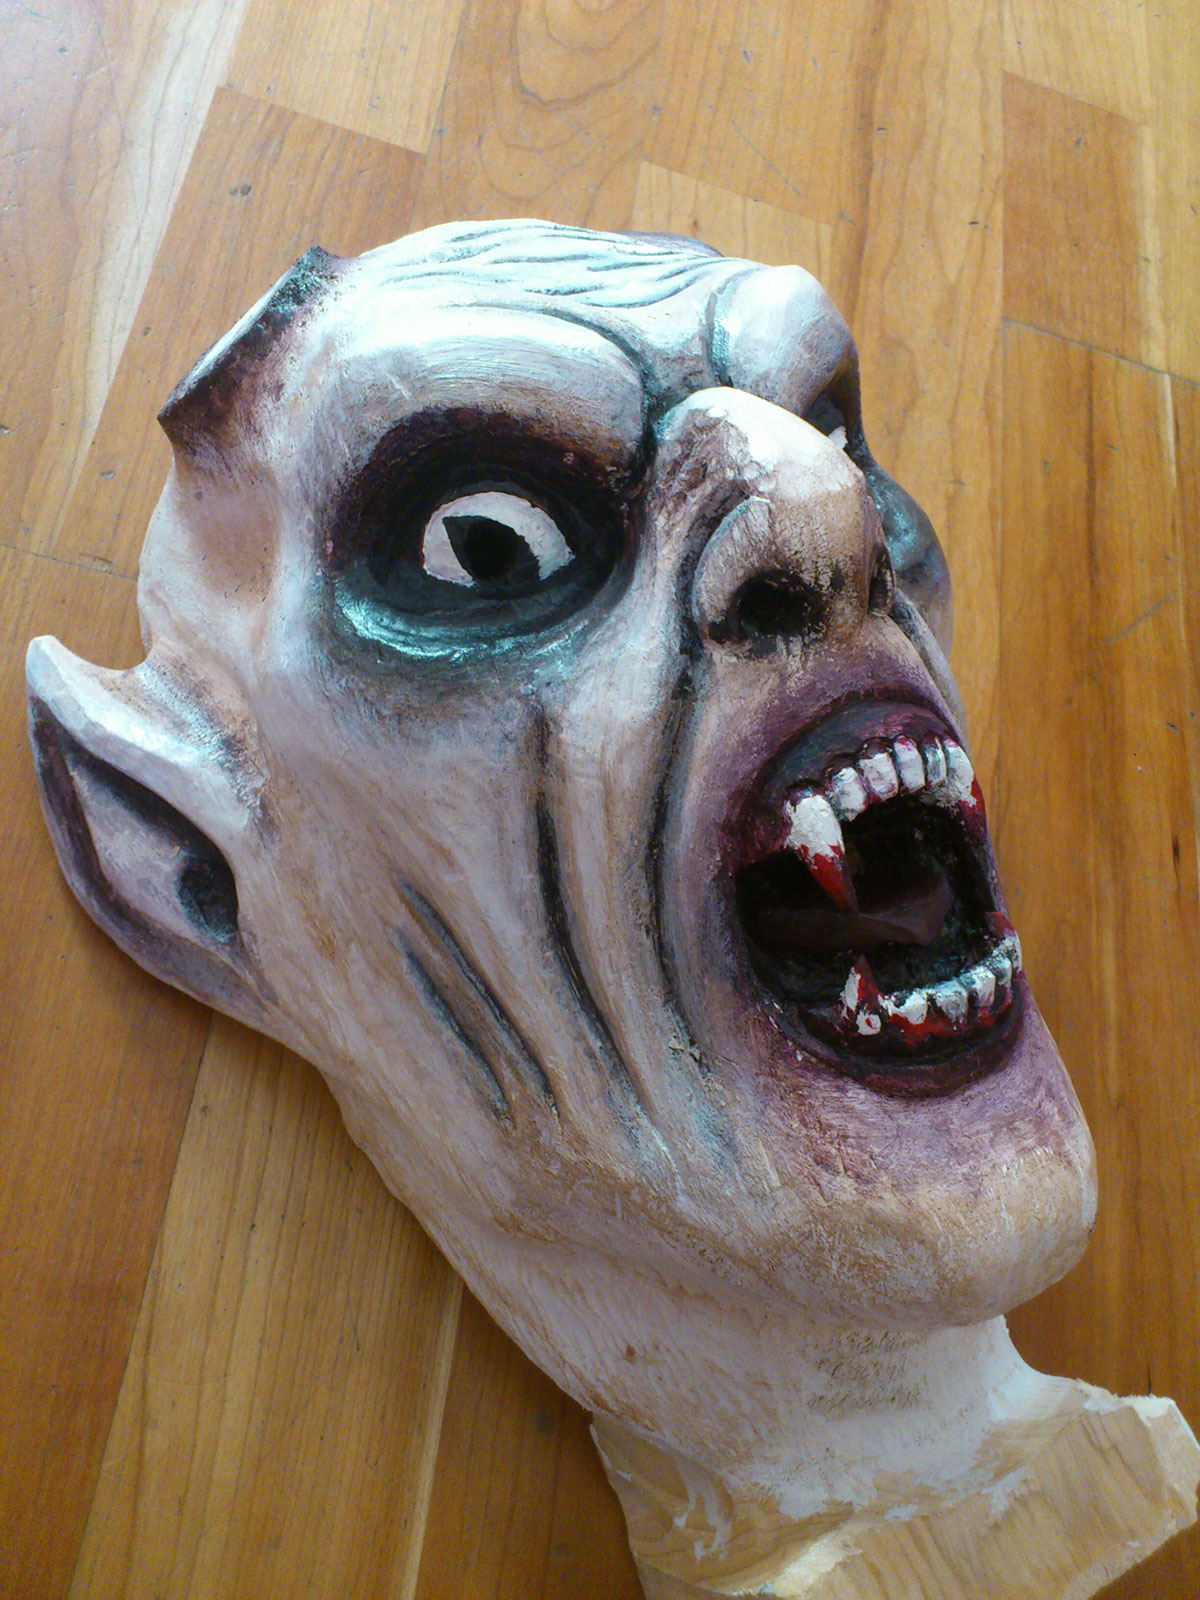 mask Make Up handmade Krampus devil costume craft Work  carving wood fear art design